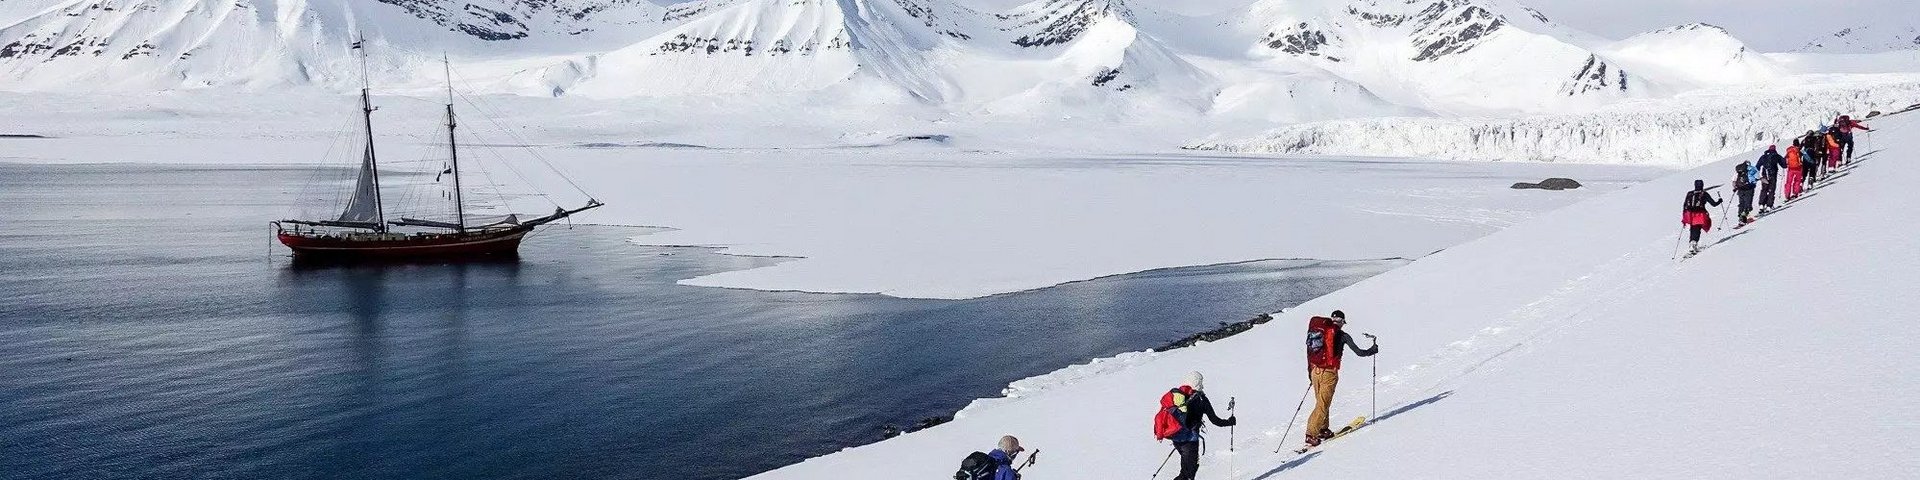 Skitourengänger in Norwegen mit Segelschiff im Hintergrund